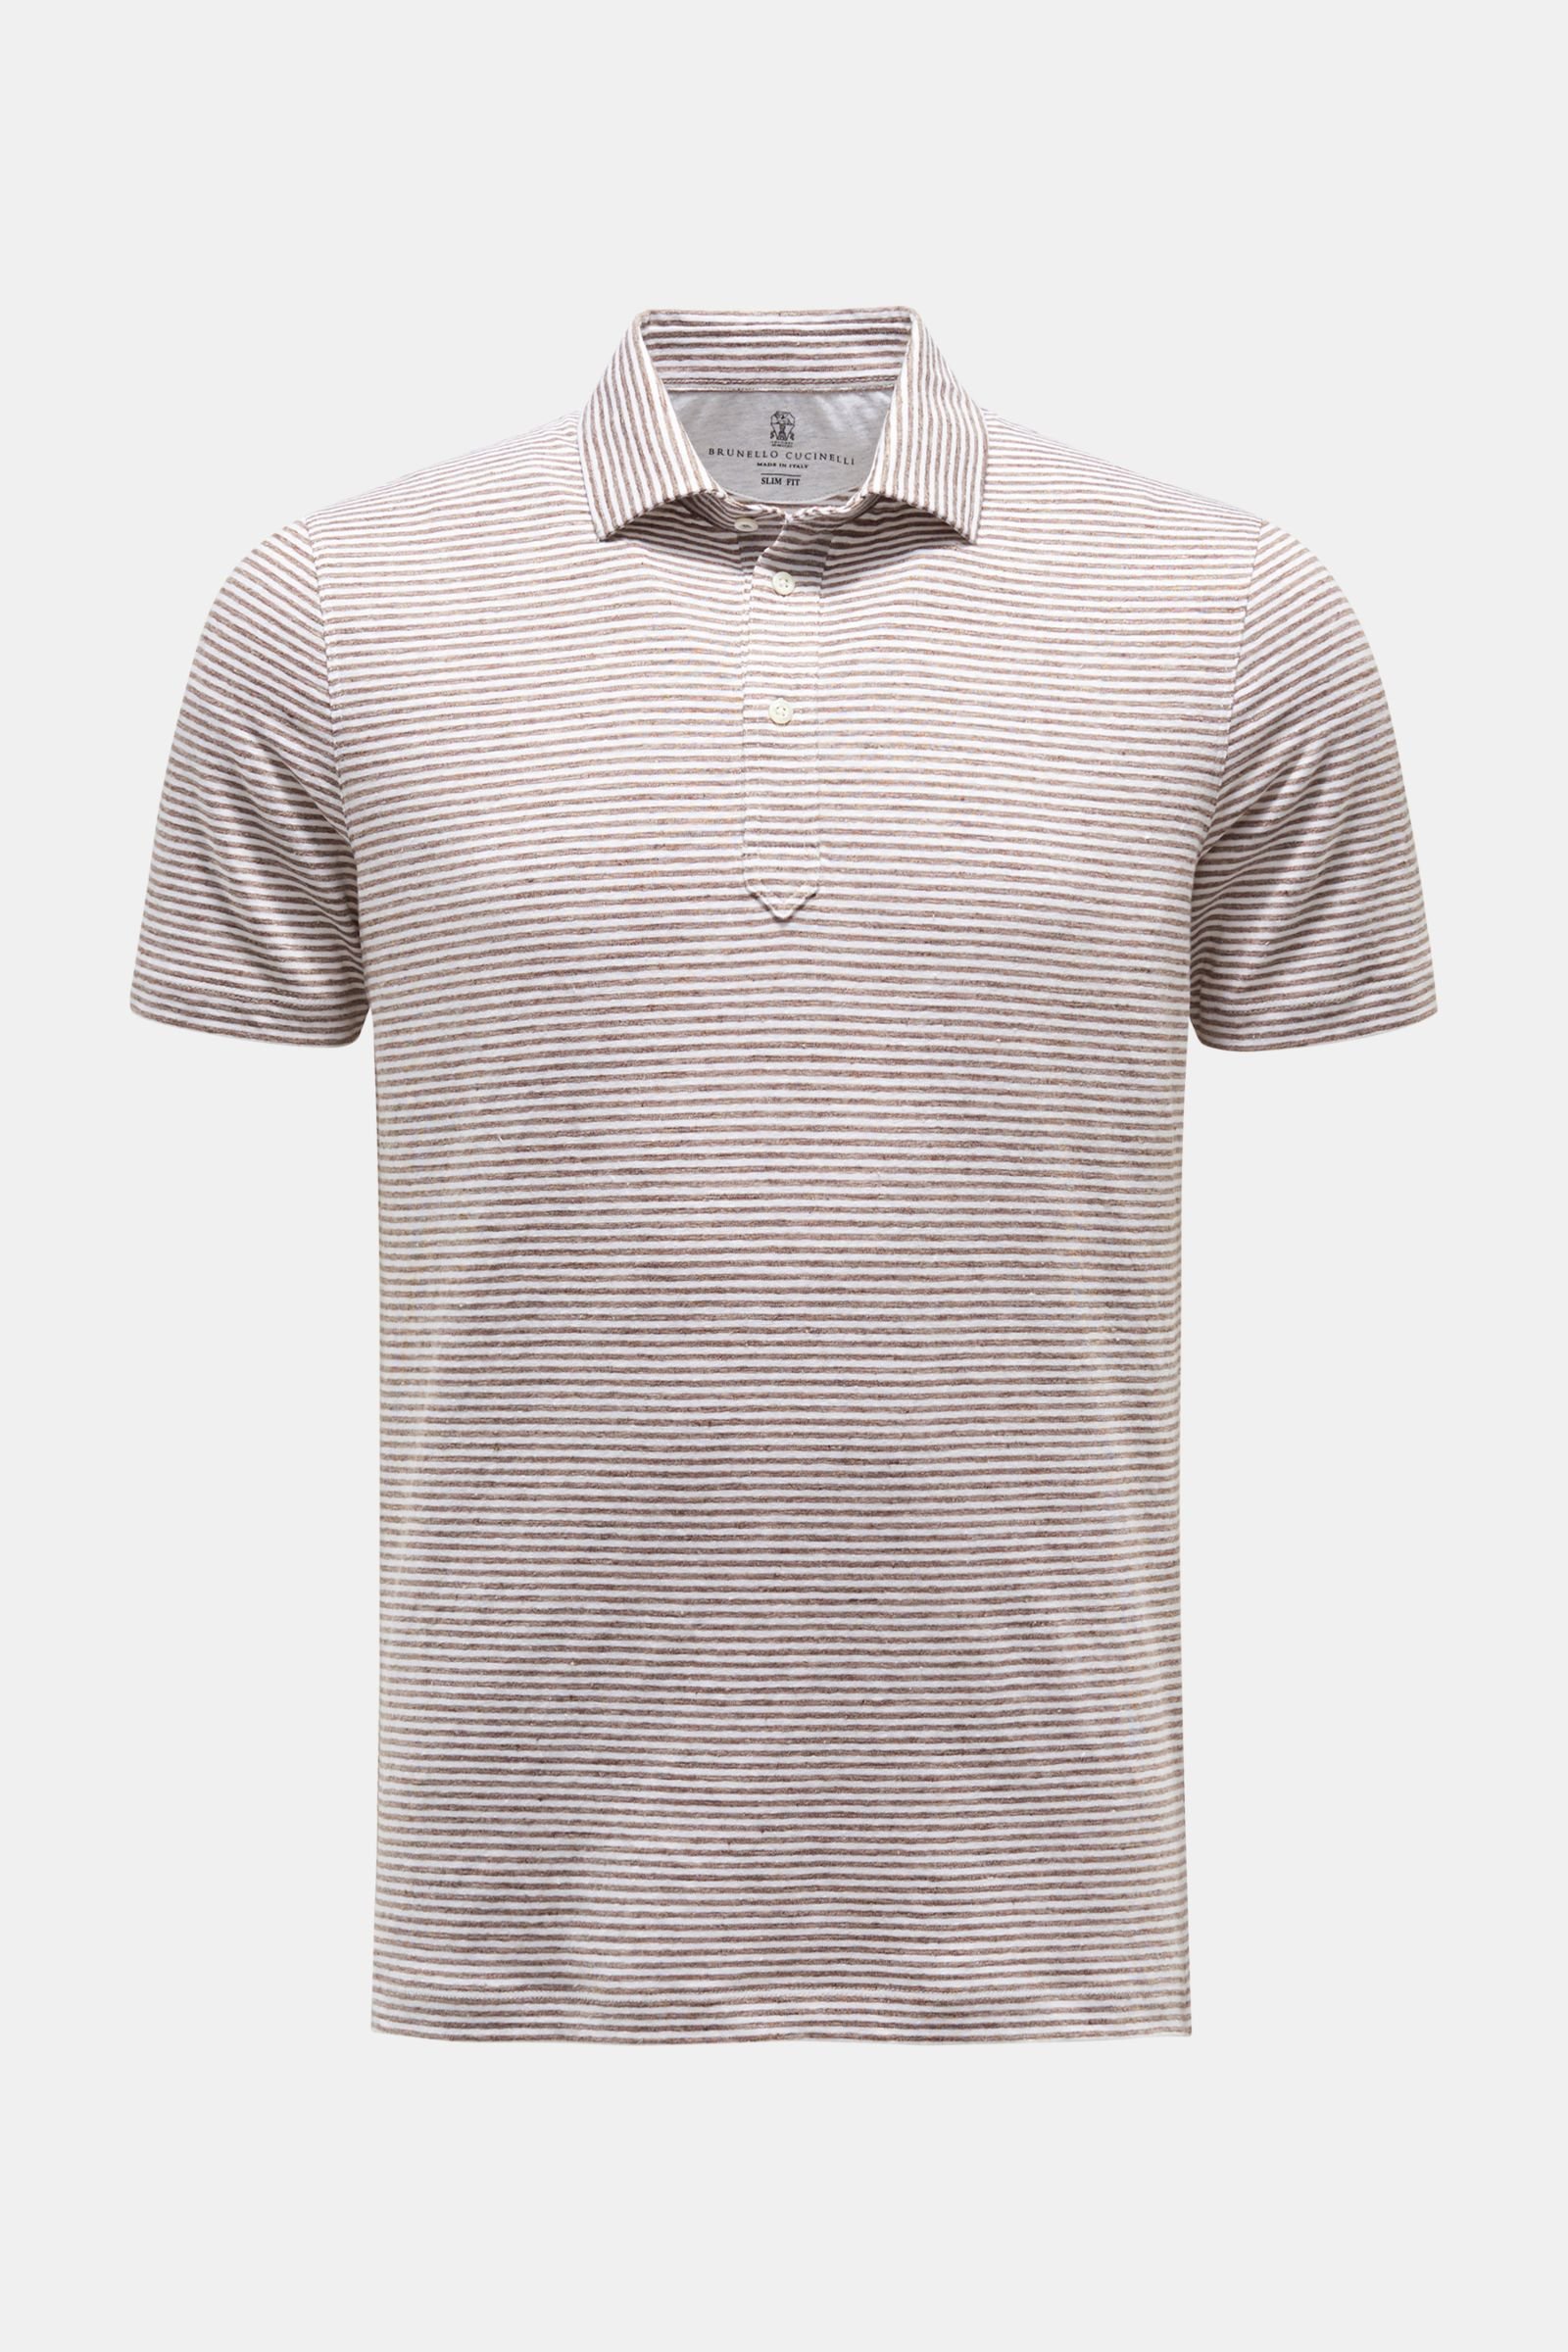 Linen polo shirt grey-brown/white striped